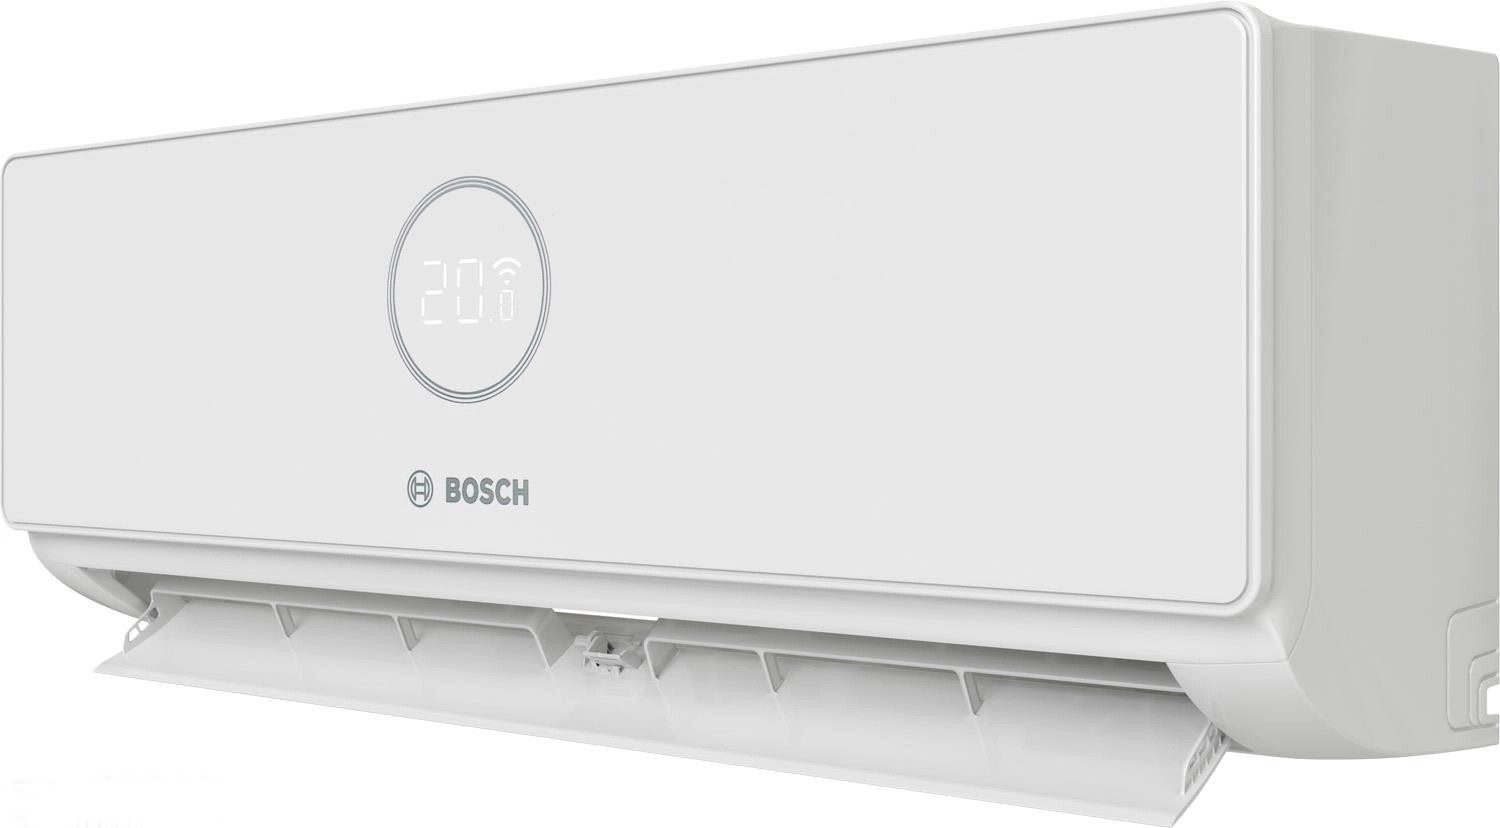 Внутренний блок мультисплит-системы Bosch CL3000iU W 53 E, 5,3 кВт отзывы - изображения 5